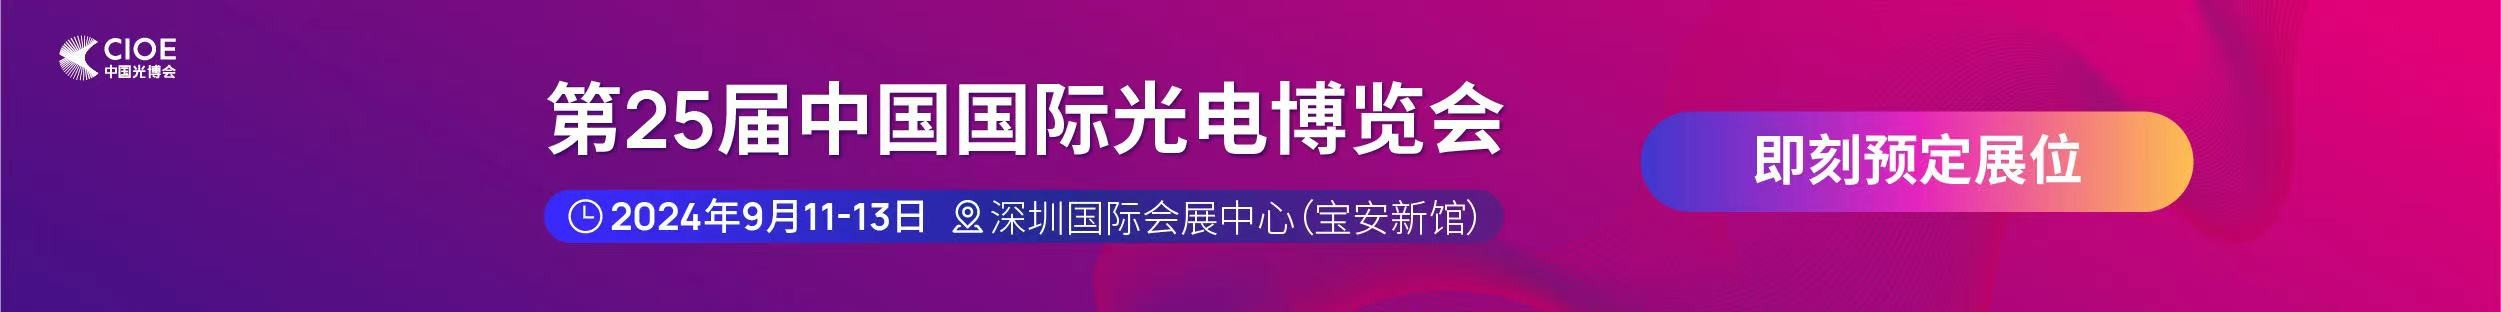 要玩就玩最好的5197新蔺京公司受邀参展第25届中国国际光电博览会